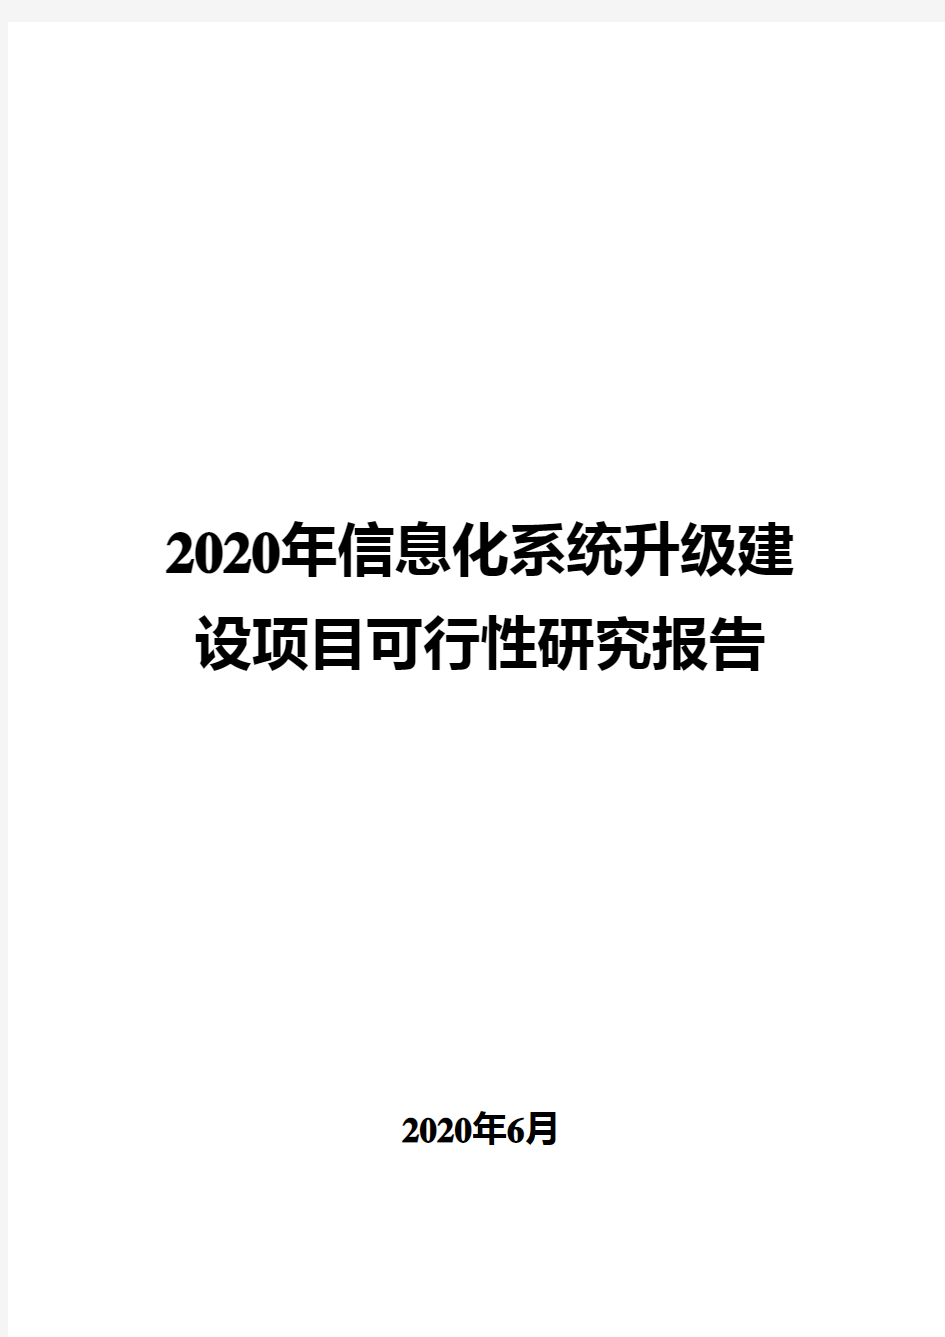 2020年信息化系统升级建设项目可行性研究报告